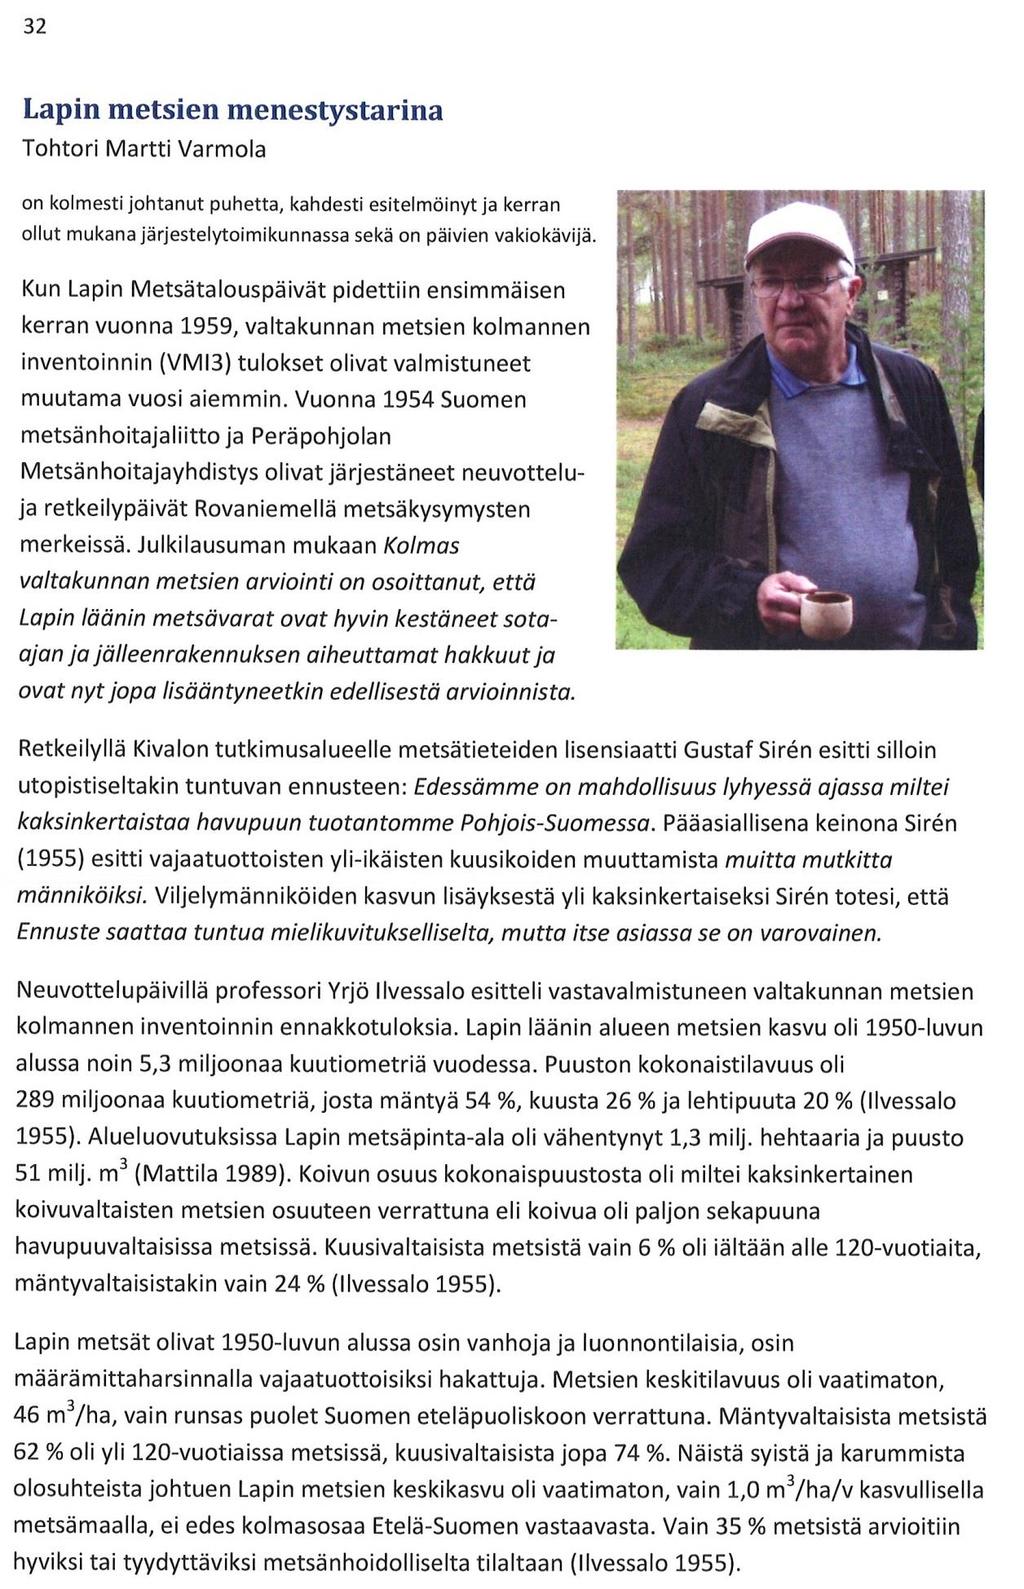 27 Varmola, M. 2018. Lapin metsien menestystarina. Teoksessa: Jalkanen, R. & Vuopio, M. (toim.).